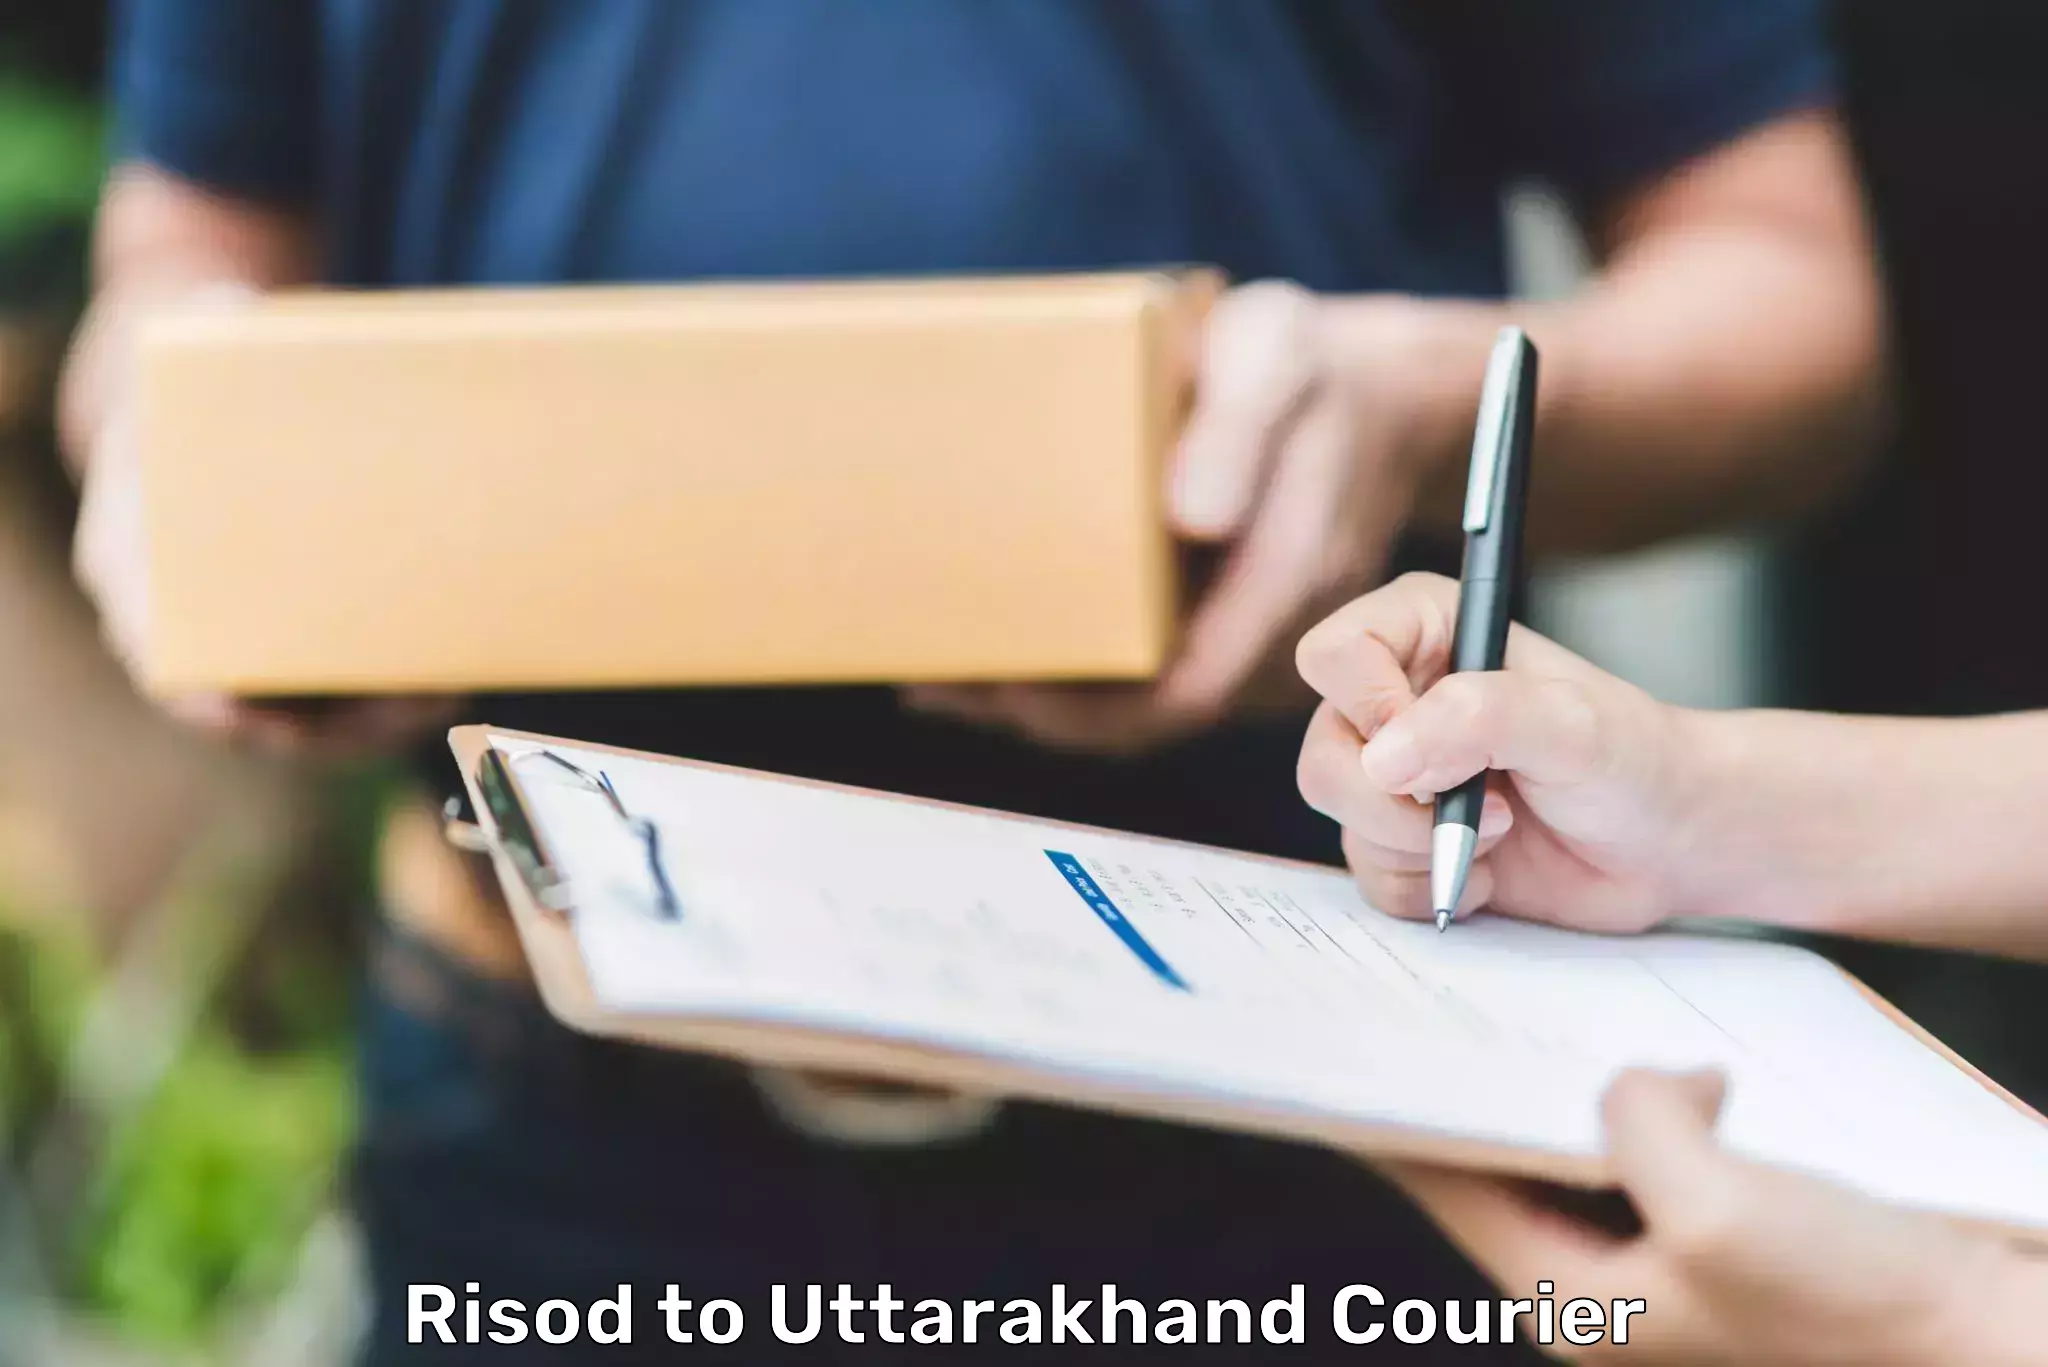 Courier service comparison Risod to Rishikesh